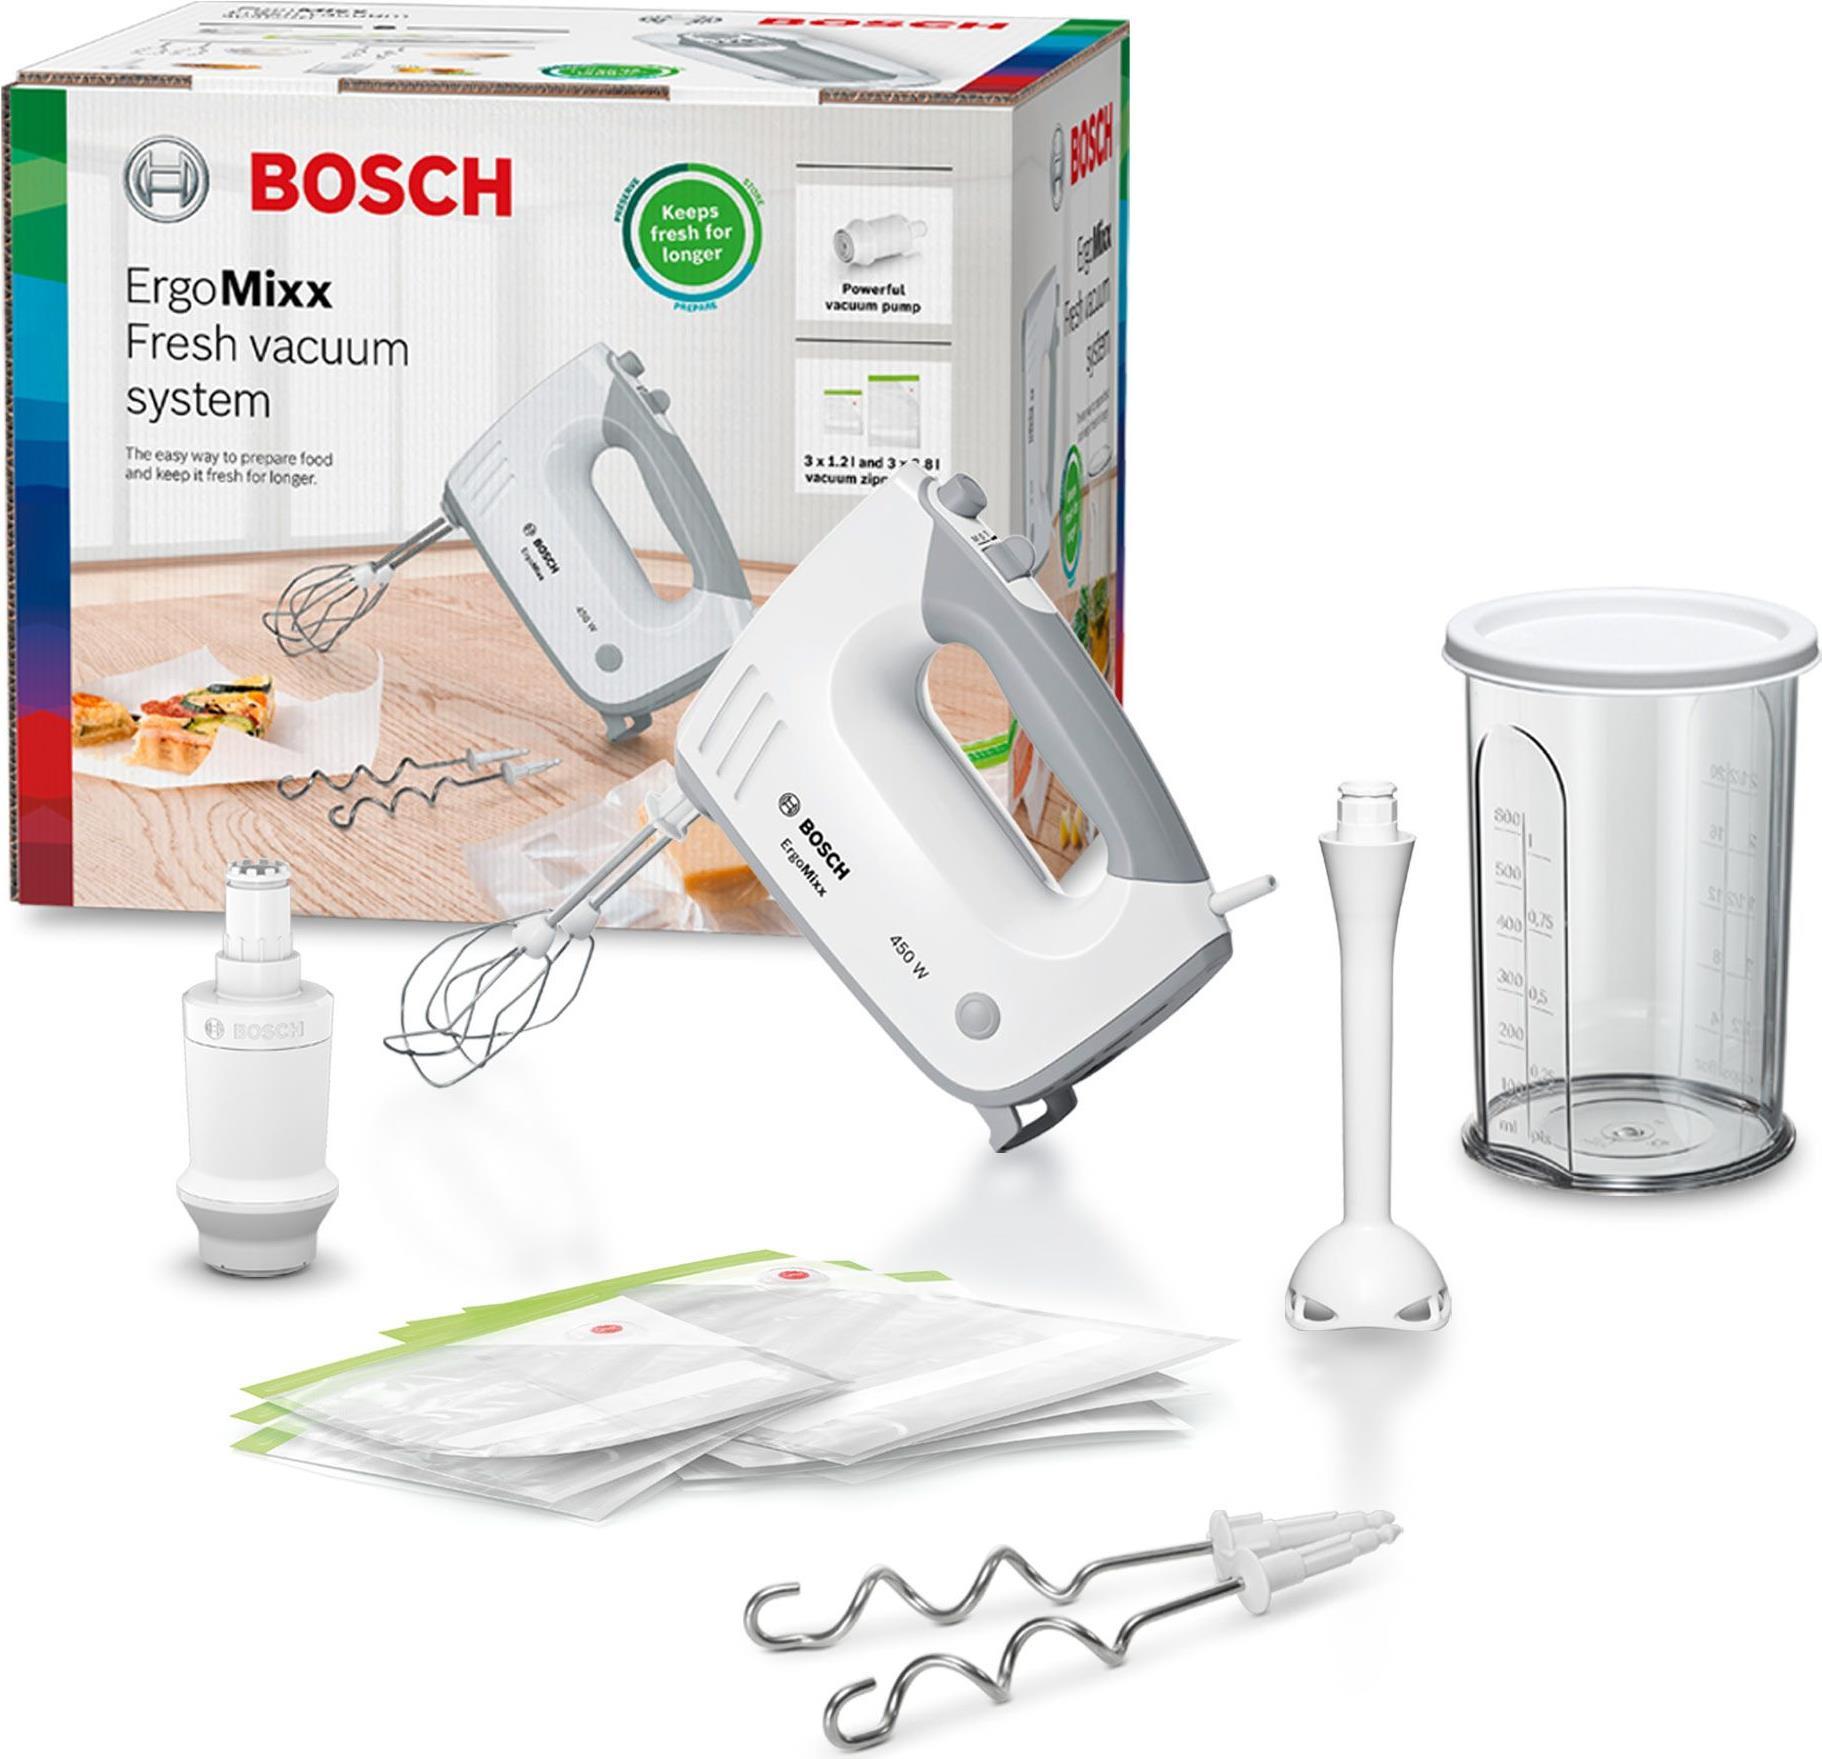 Bosch ErgoMixx - Handmixer - Wei� - Mischung - Kneten - Mixen - 1,3 m - 0,6 l - Tasten (MFQ364V0) von Bosch